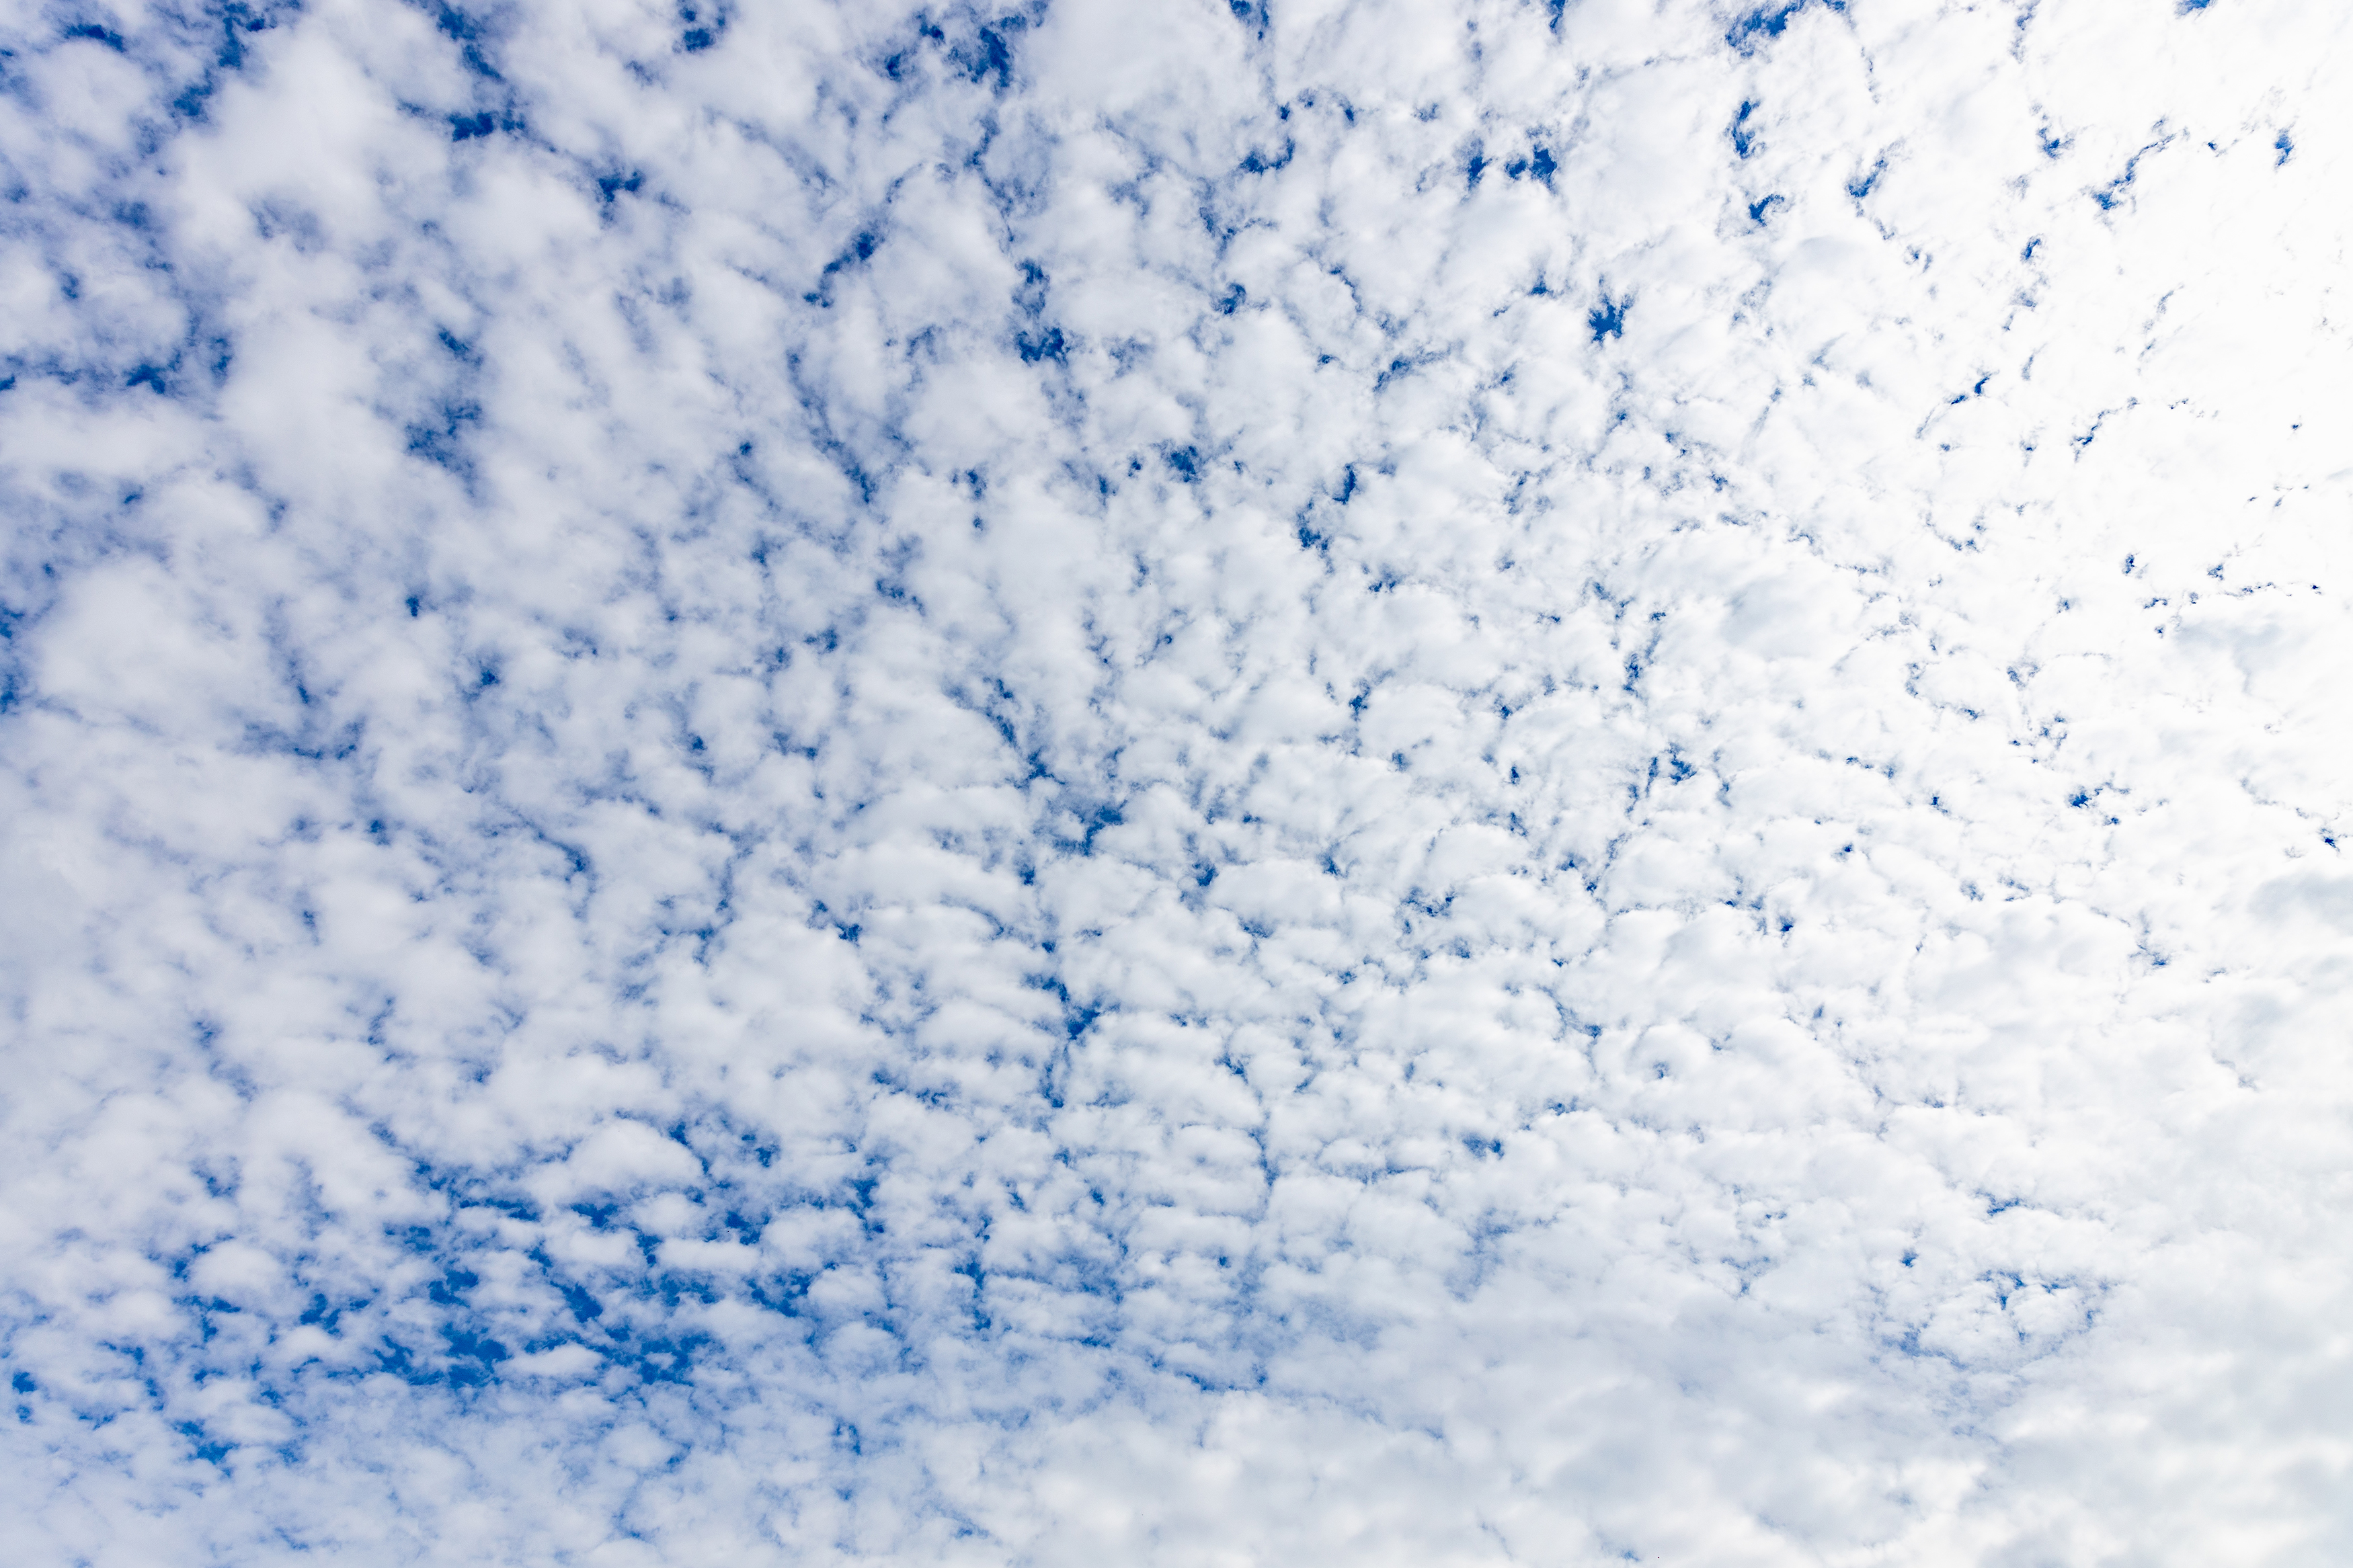 羊雲 ひつじ雲 無料の高画質フリー写真素材 イメージズラボ